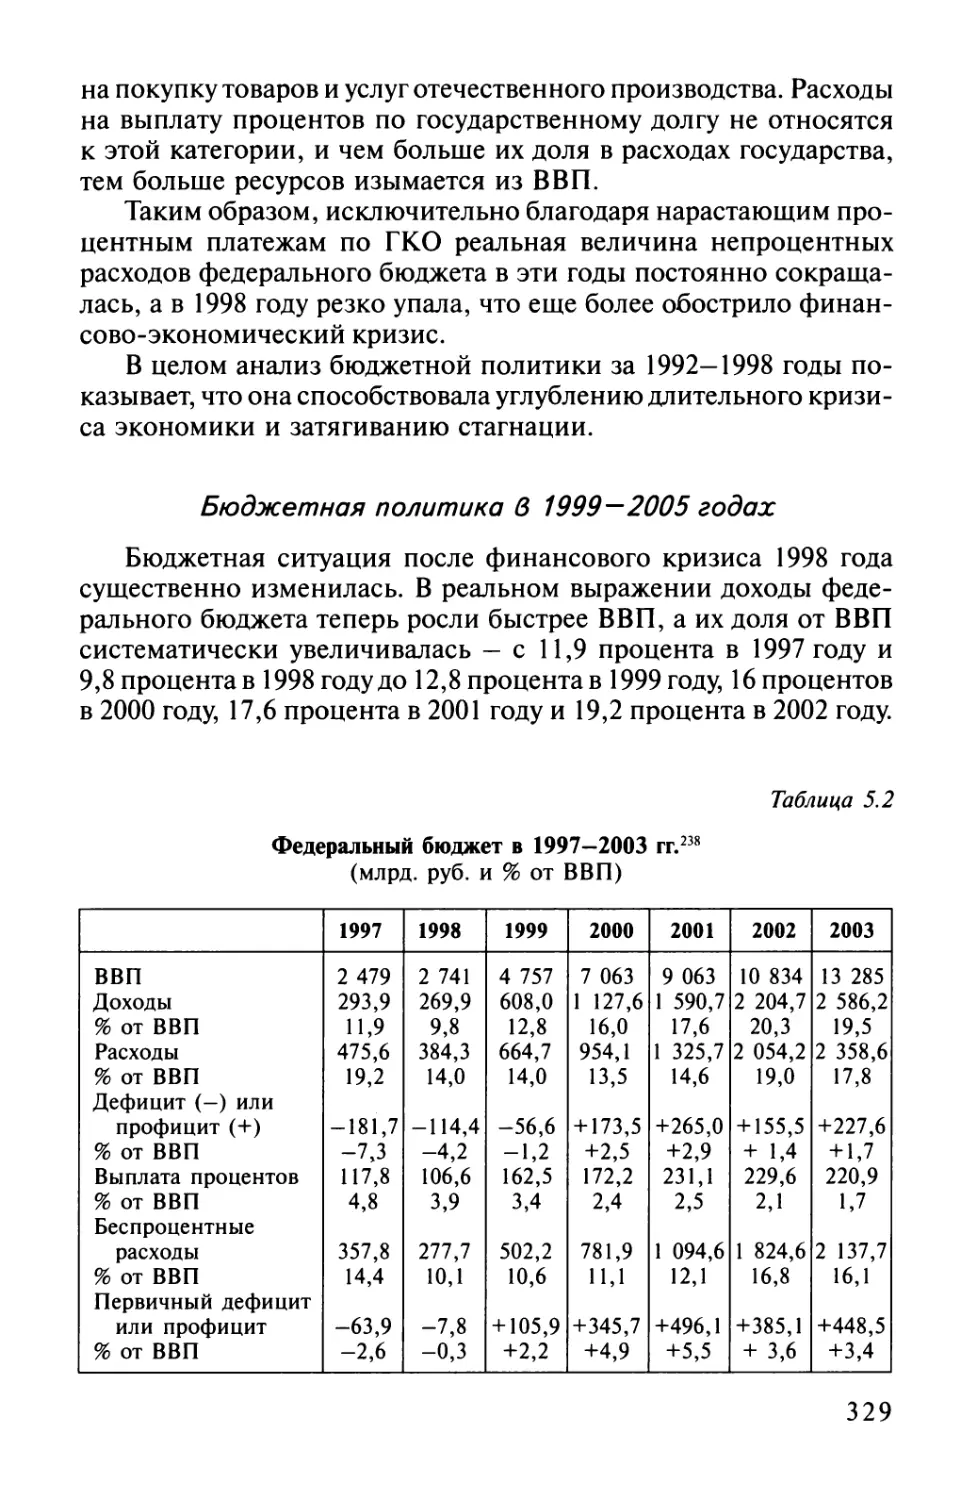 Бюджетная политика в 1999—2005 годах